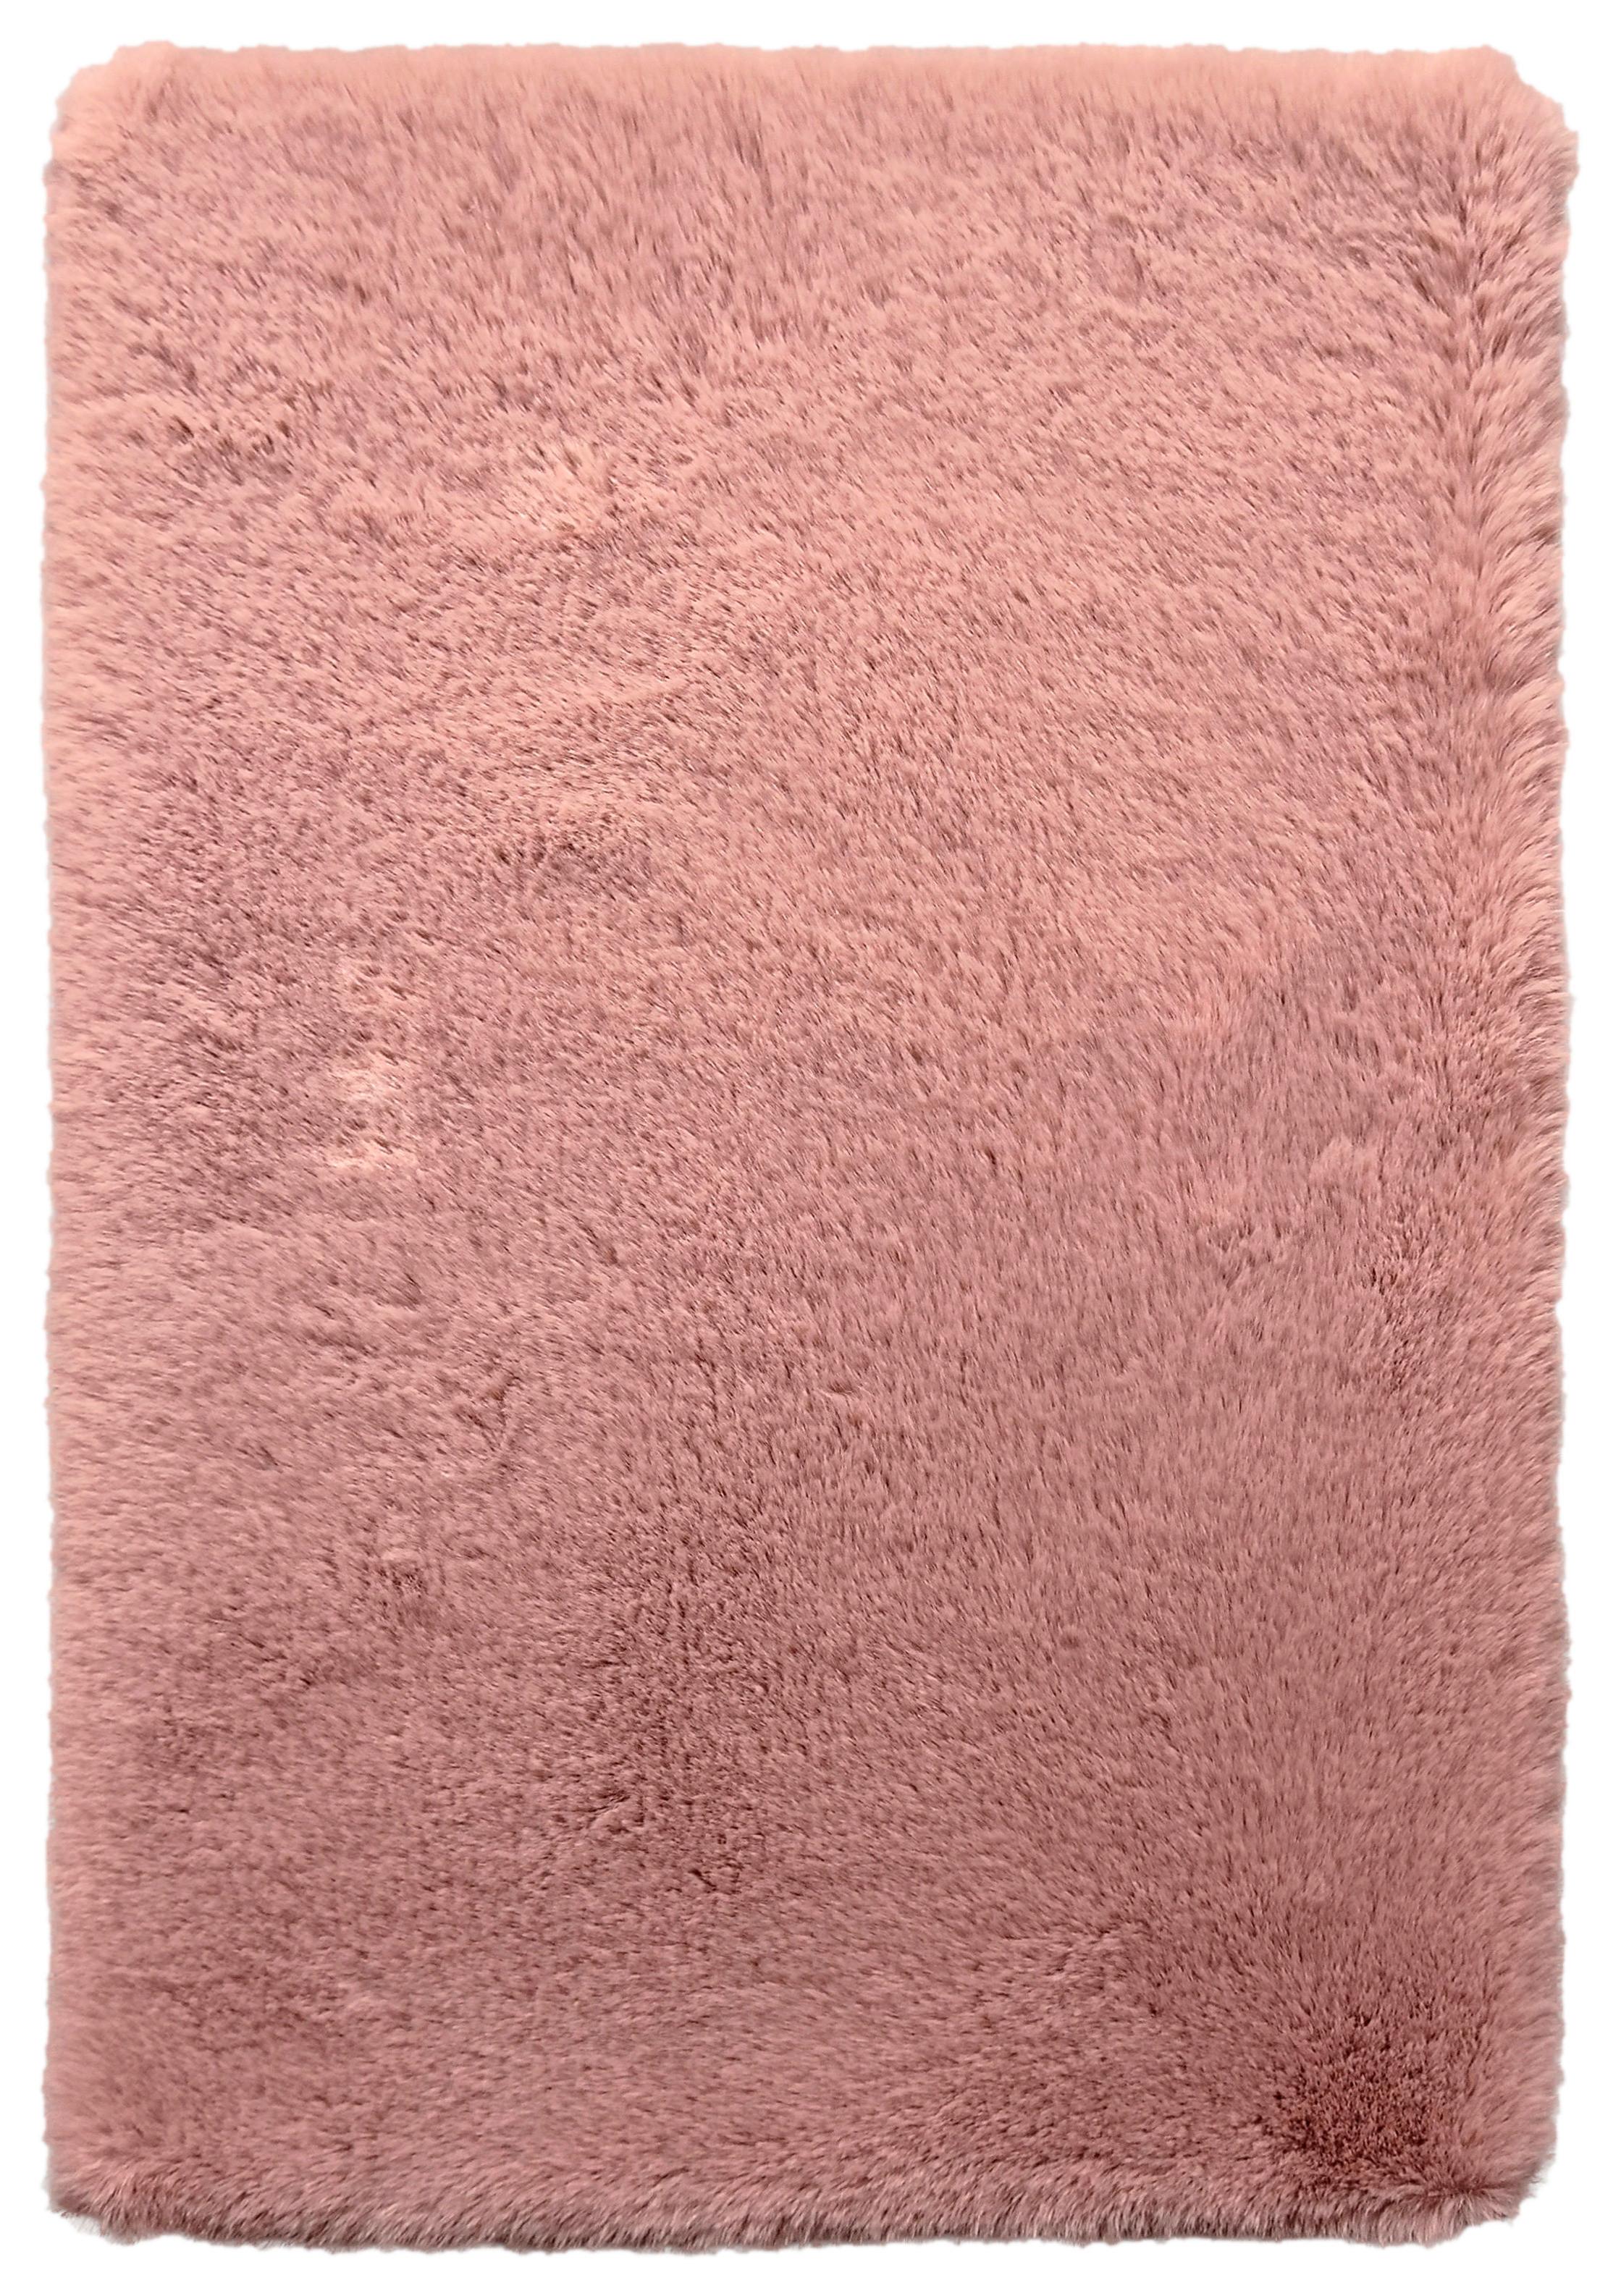 Blană artificială Caroline 2 - roz antic (120/160cm) - Modern Living